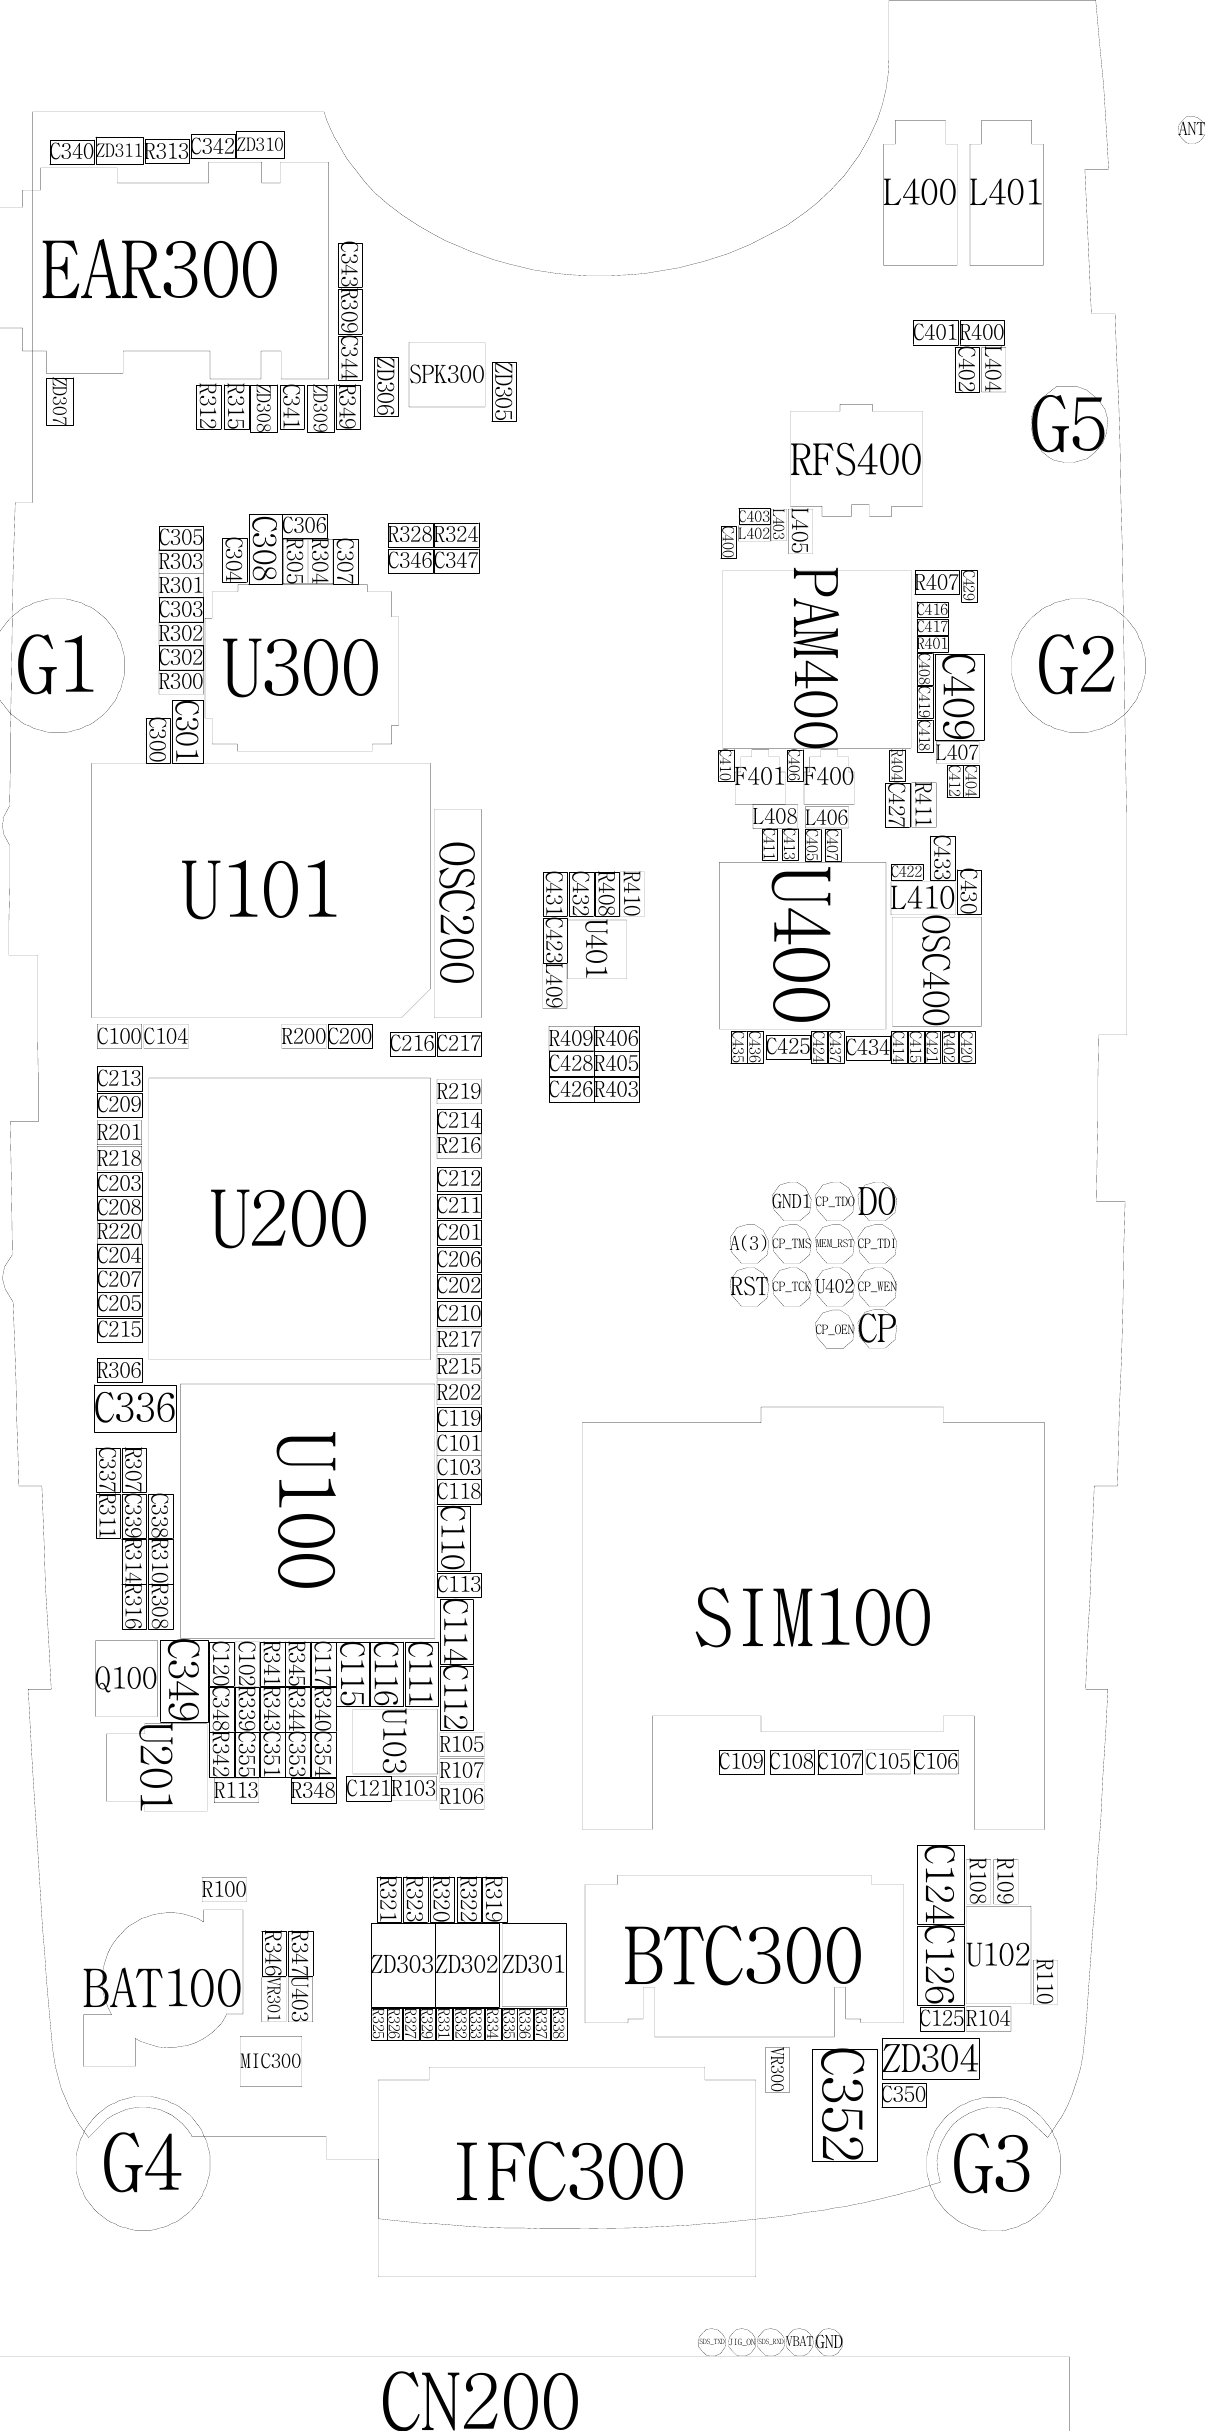 Page 1 of 7 - Samsung SGH-C300 - Schematics. Www.s-manuals.com. Schematics R0.1